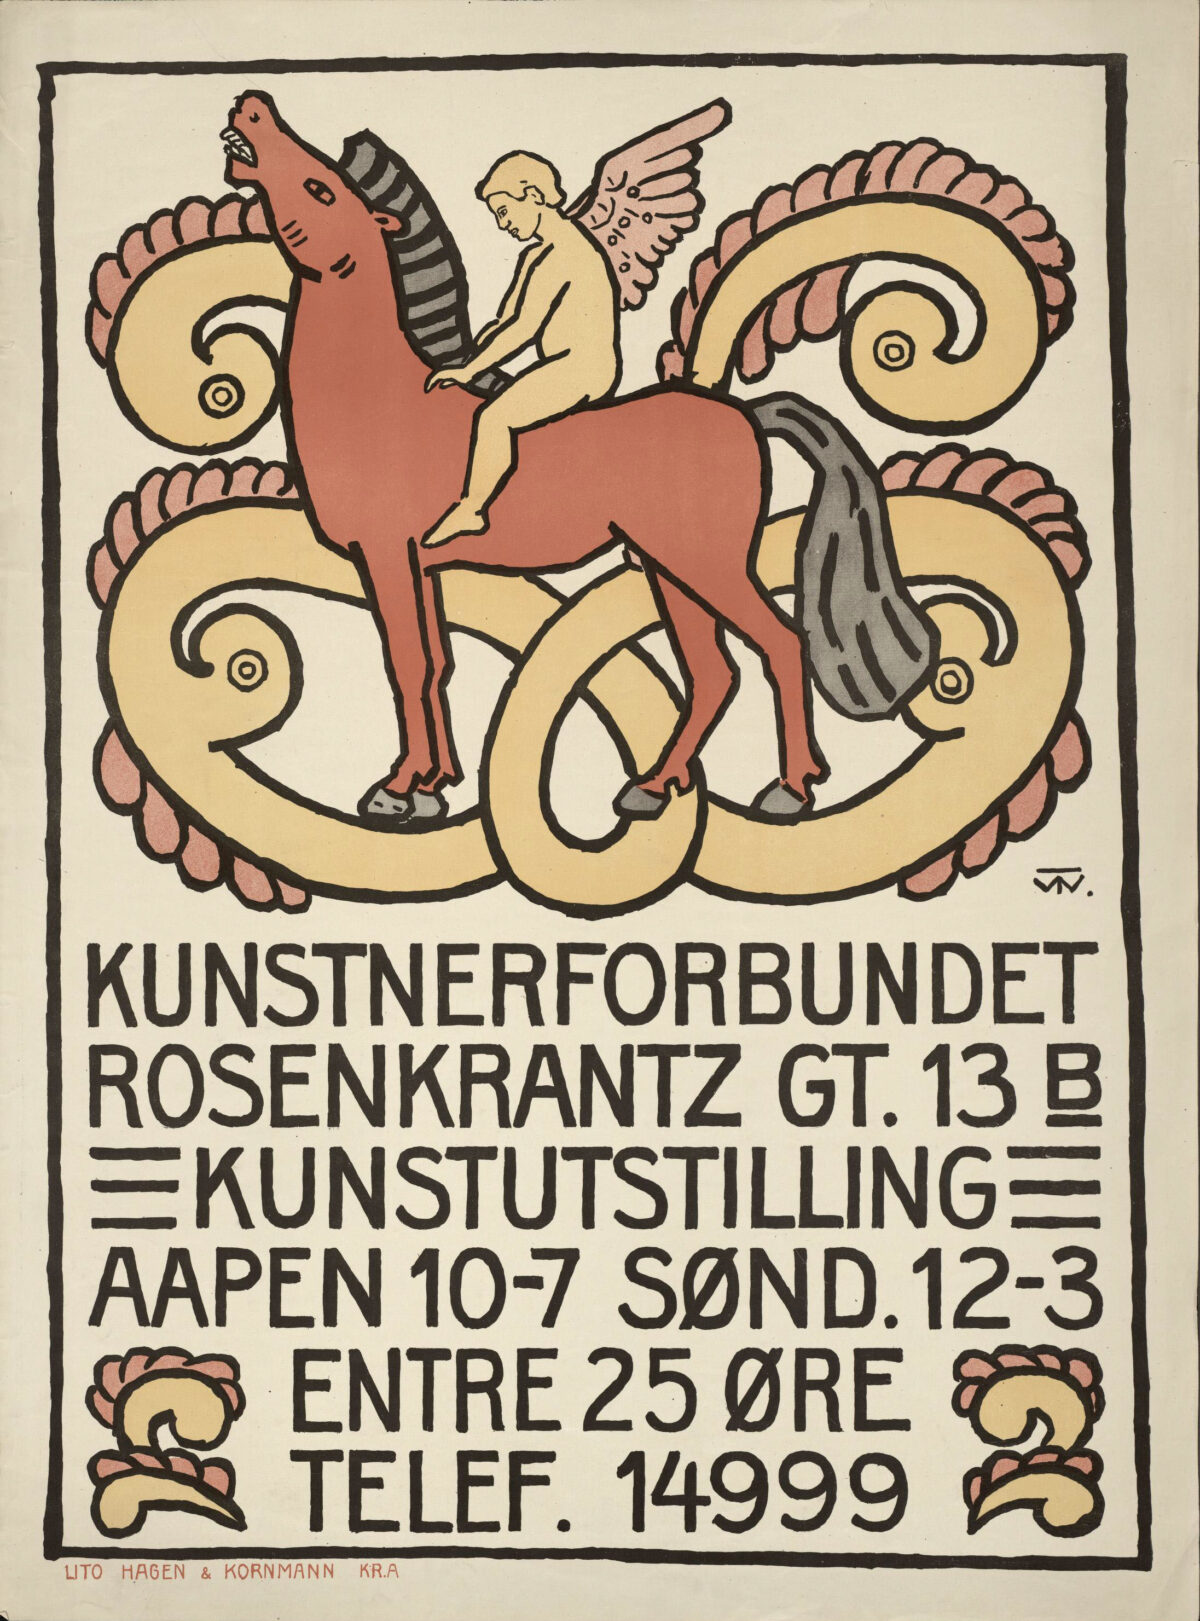 Illustrasjon av engel på rød hest med figurborder og tekst for kunstutstilling hos Kunstnerforbundet